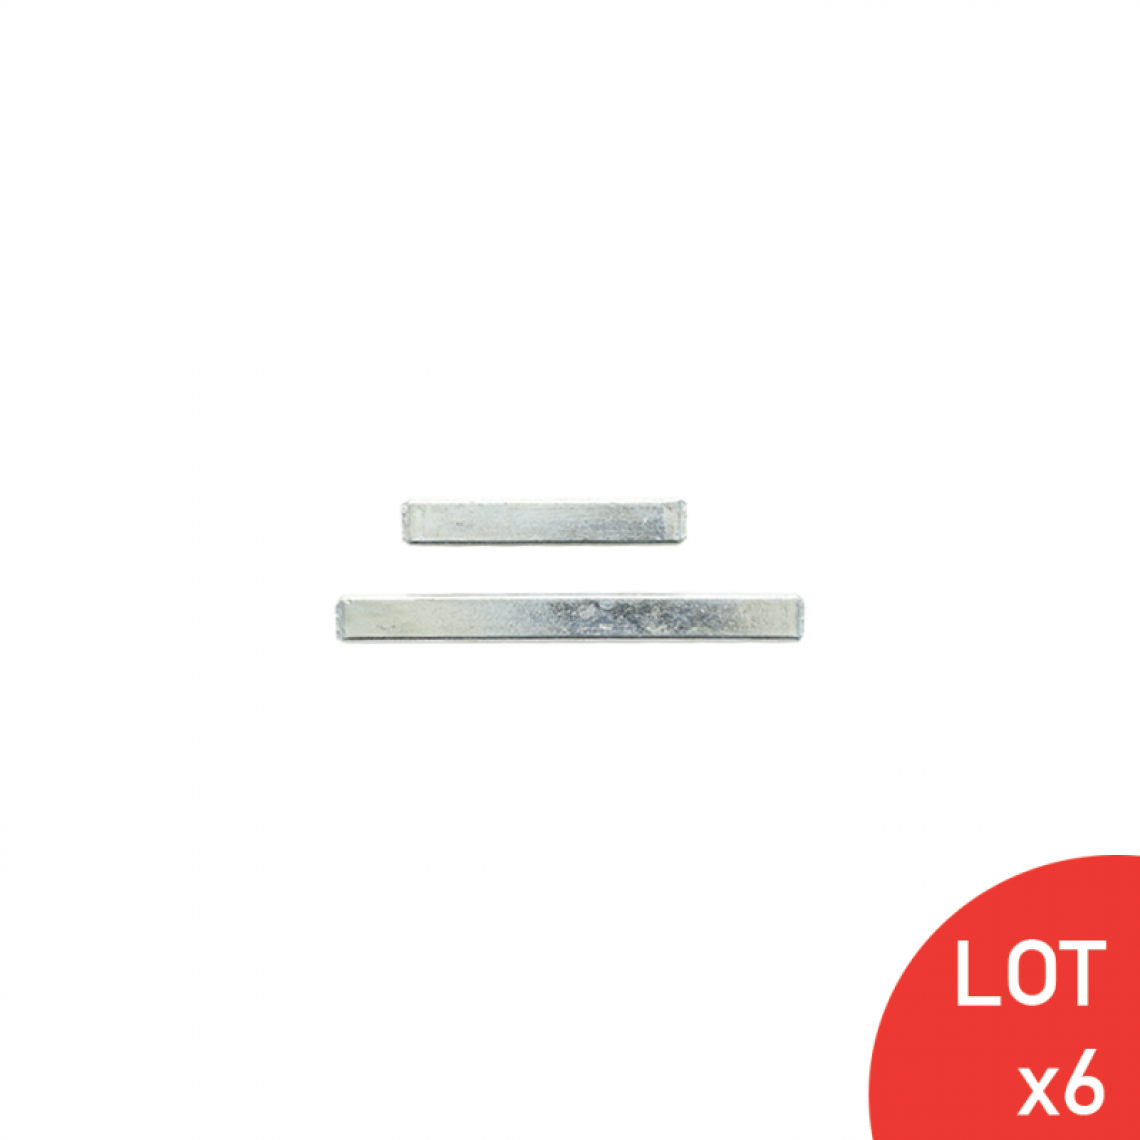 Secury-T - Tige carrée en acier zingué blanc plein 7X42/7X68 kit de 2 LOT DE 100 - Visserie